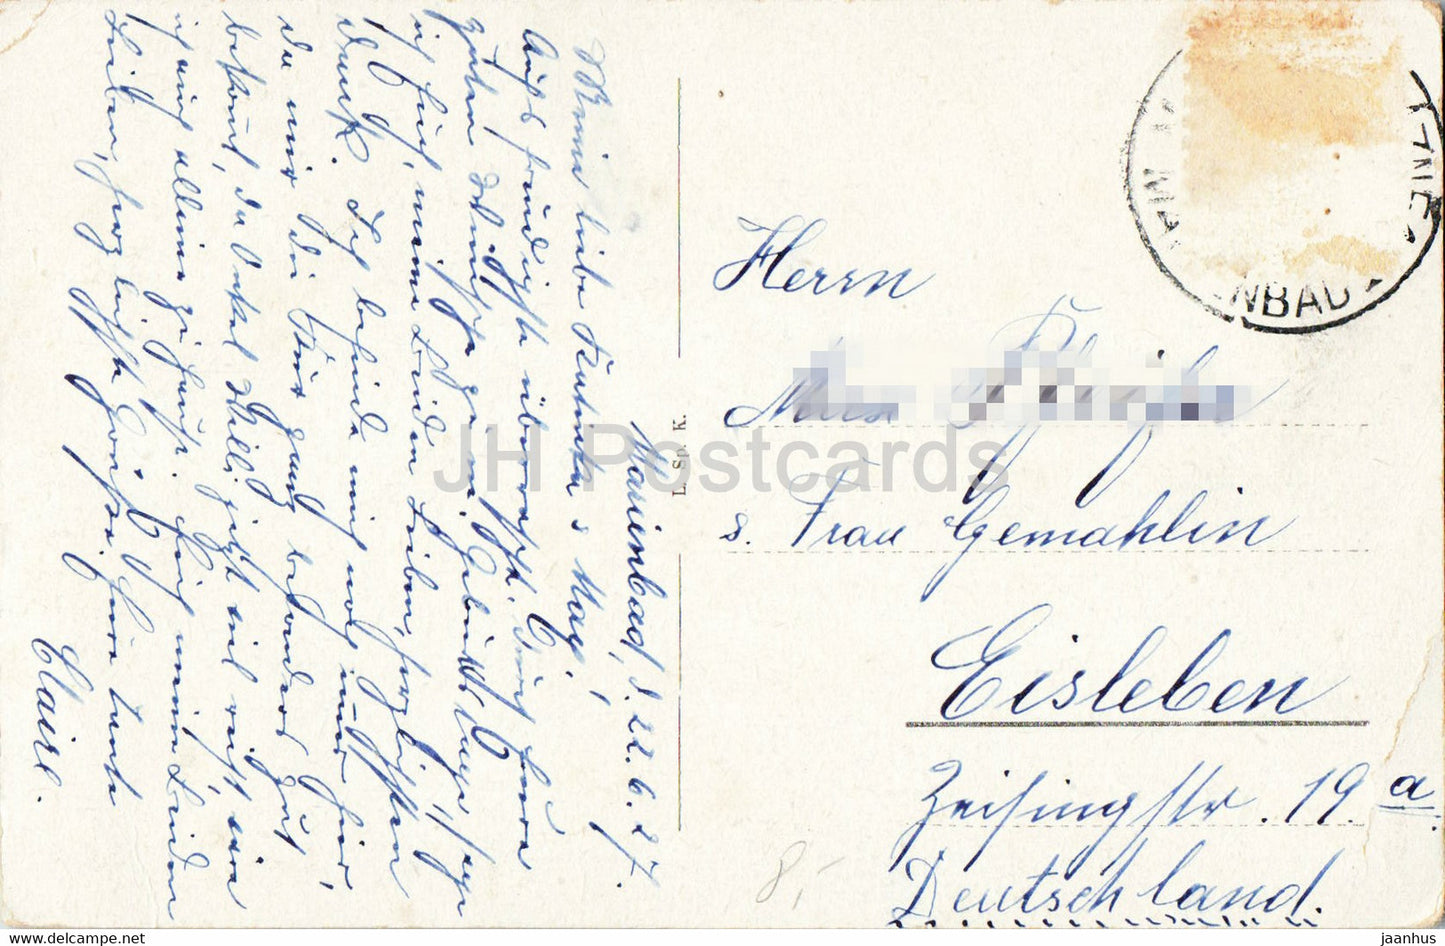 Marienbad - Marienbad - Kurhaus - Rudolfsquelle - Kurpromenade - alte Postkarte - 1927 - Tschechien - gebraucht